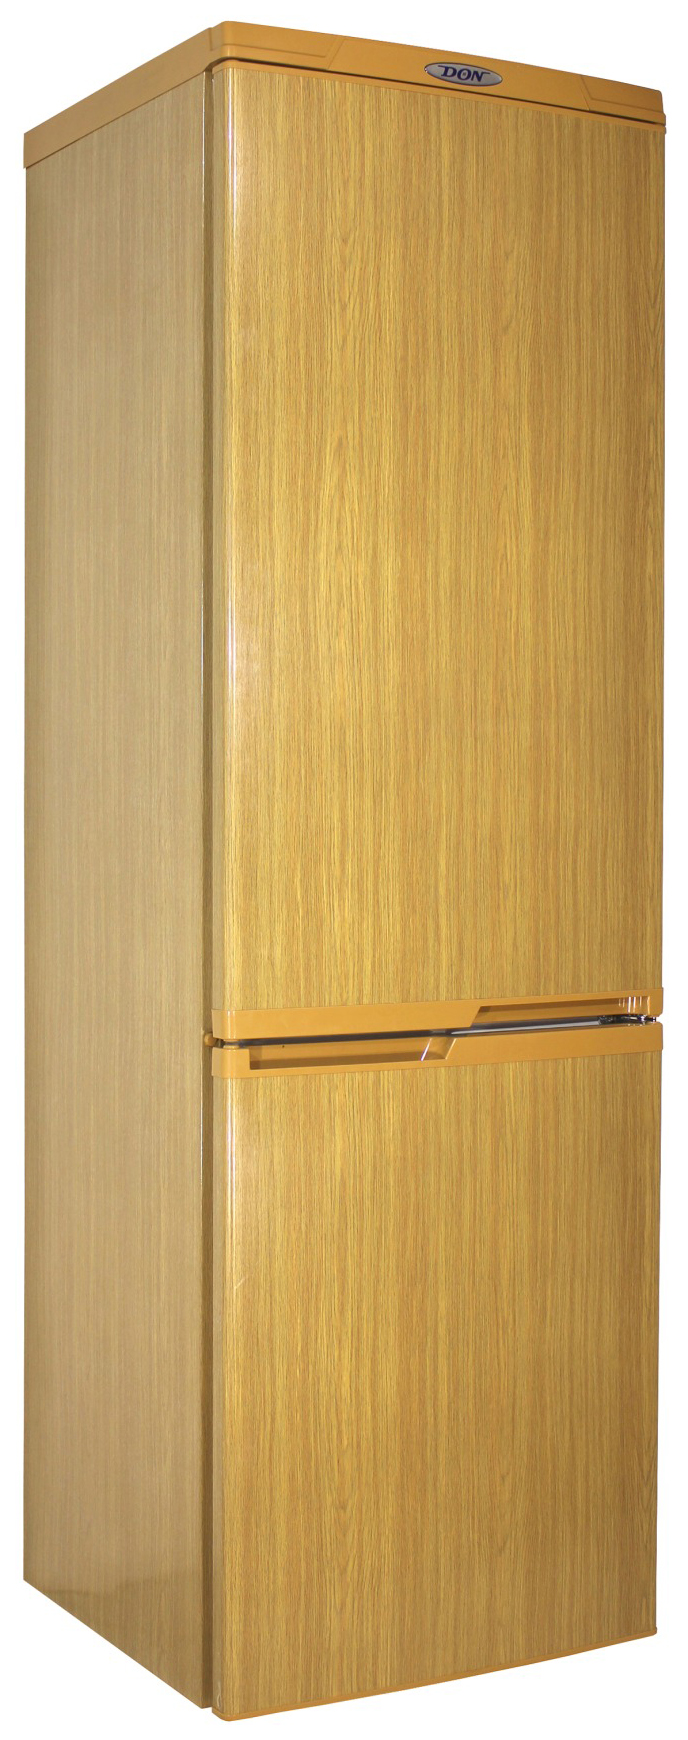 Холодильник DON R 291 DUB коричневый холодильник tesler rct 100 коричневый